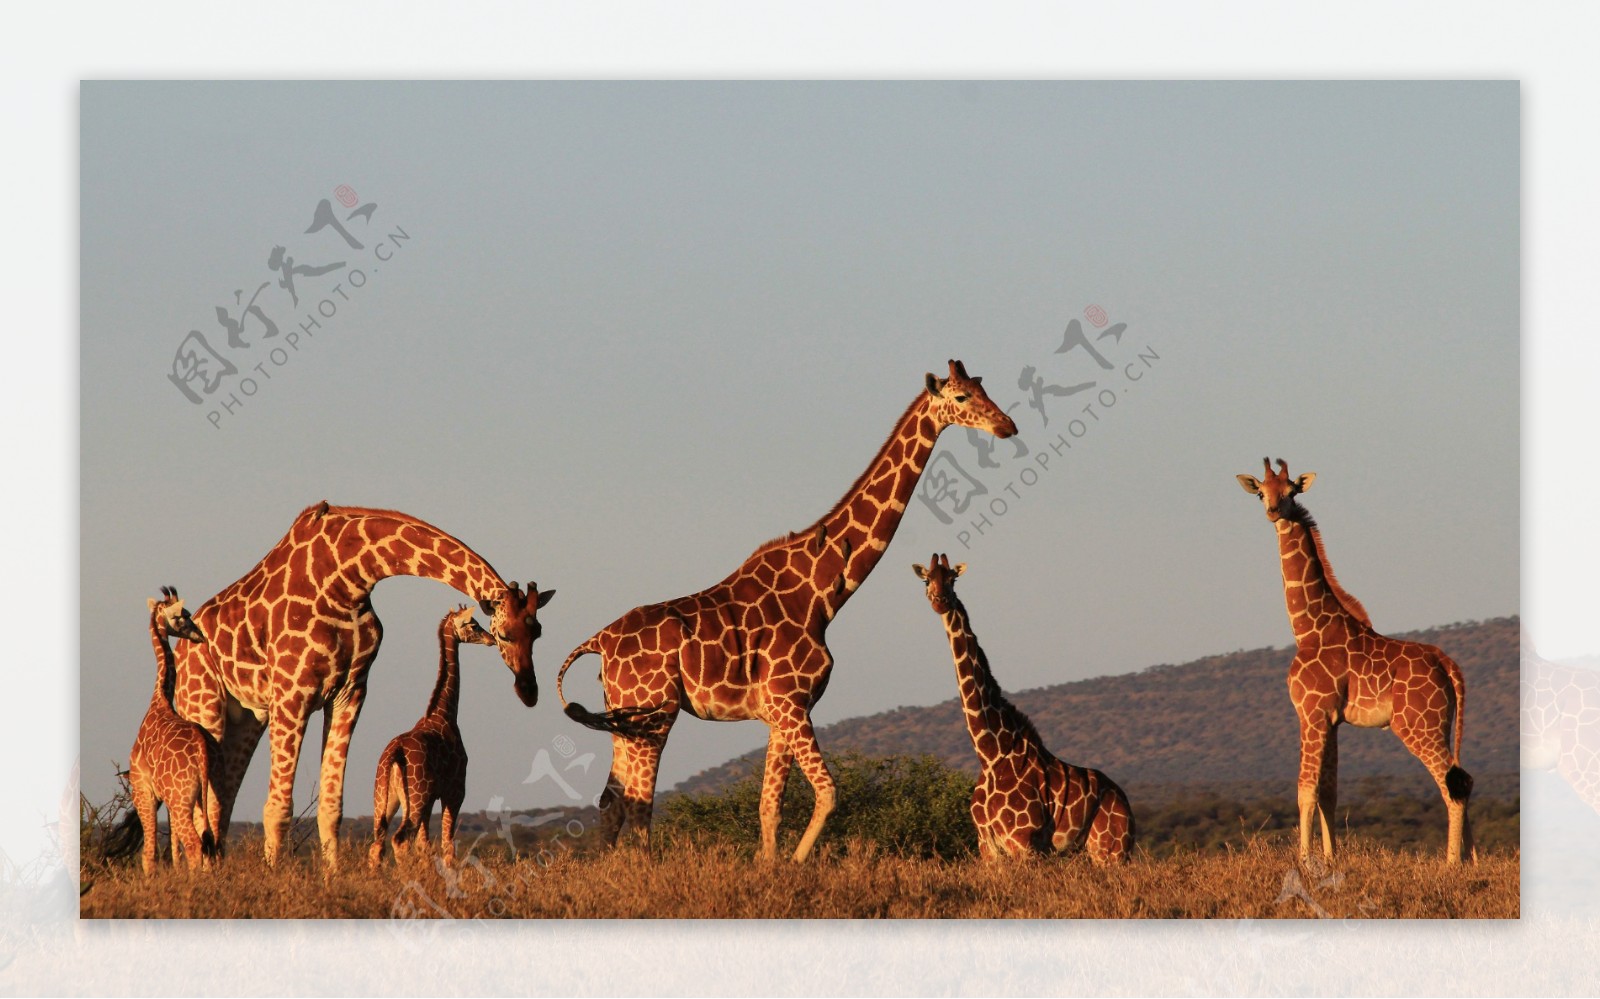 非洲草原上的长颈鹿群